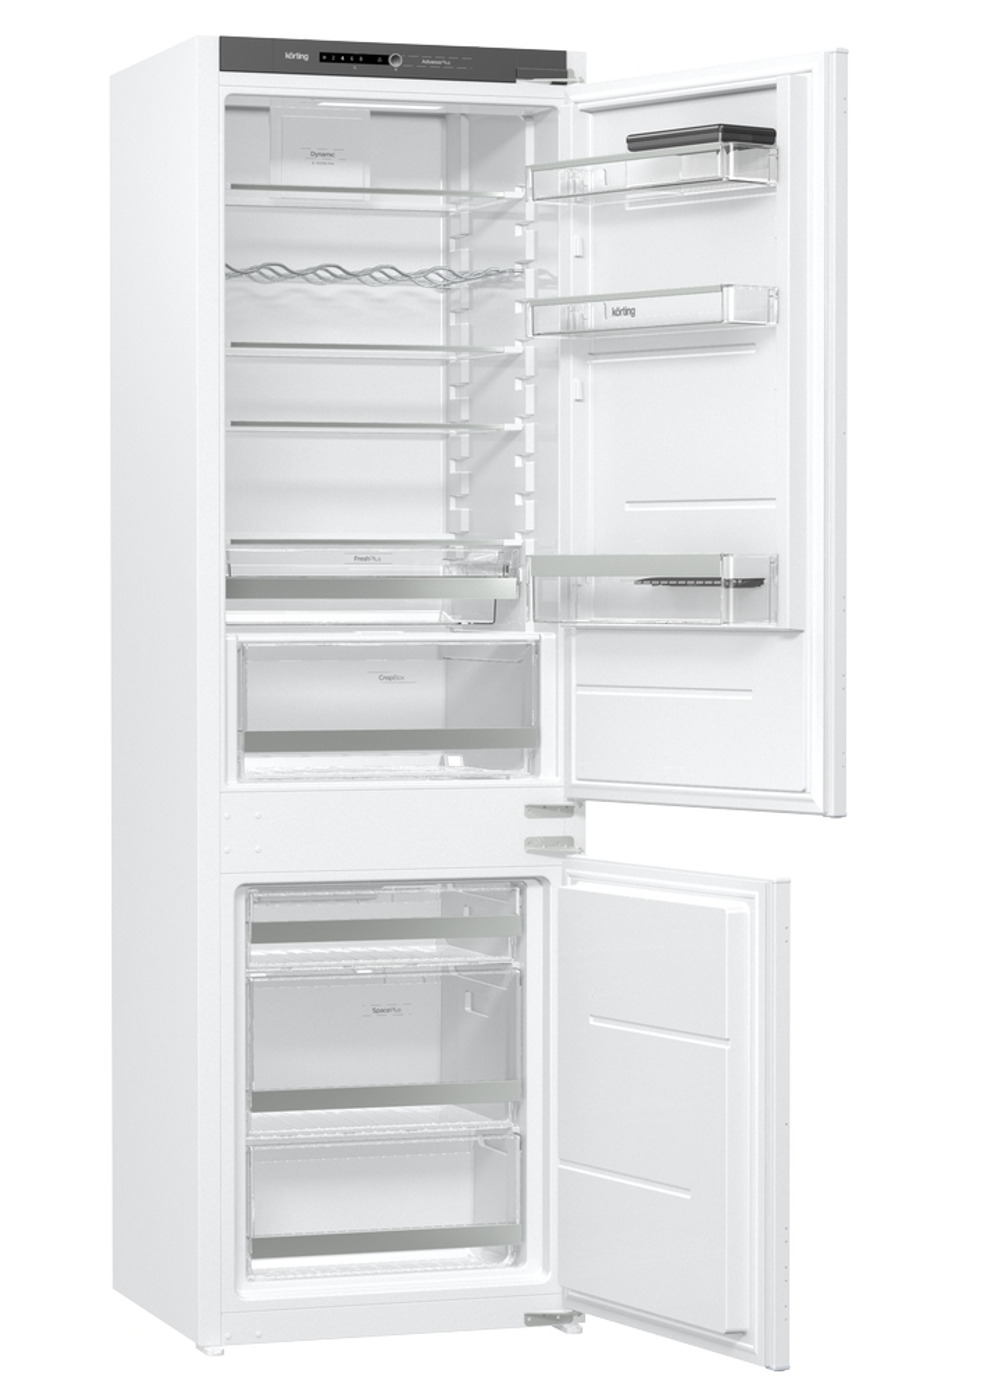 Холодильник встраиваемый с морозилкой внизу Korting KSI 17877 CFLZ